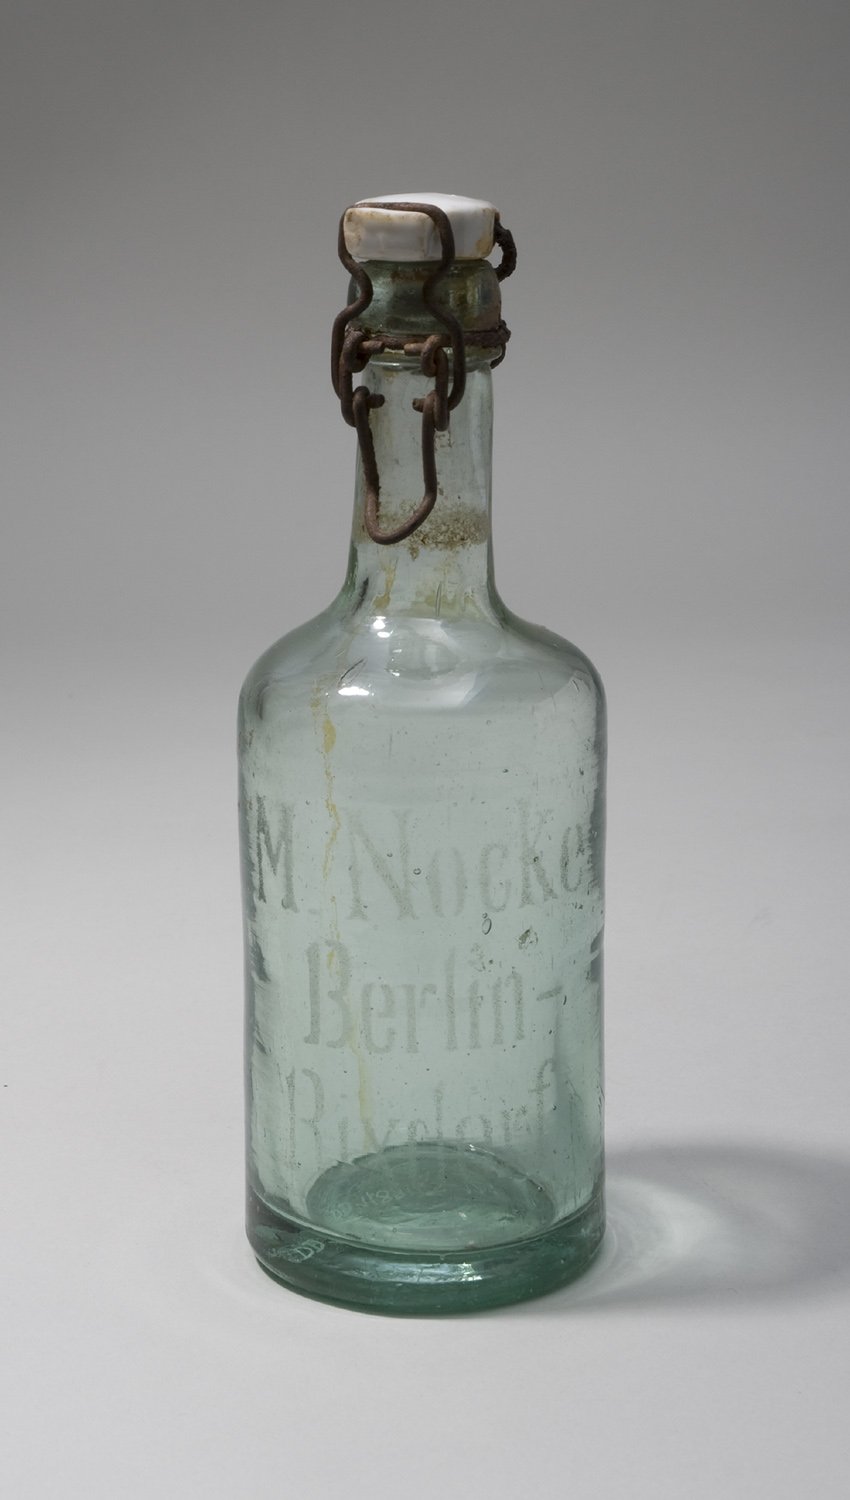 Bierflasche "M. Nocke Berlin-Rixdorf", mit Bügelverschluss (Stiftung Domäne Dahlem - Landgut und Museum, Weiternutzung nur mit Genehmigung des Museums CC BY-NC-SA)